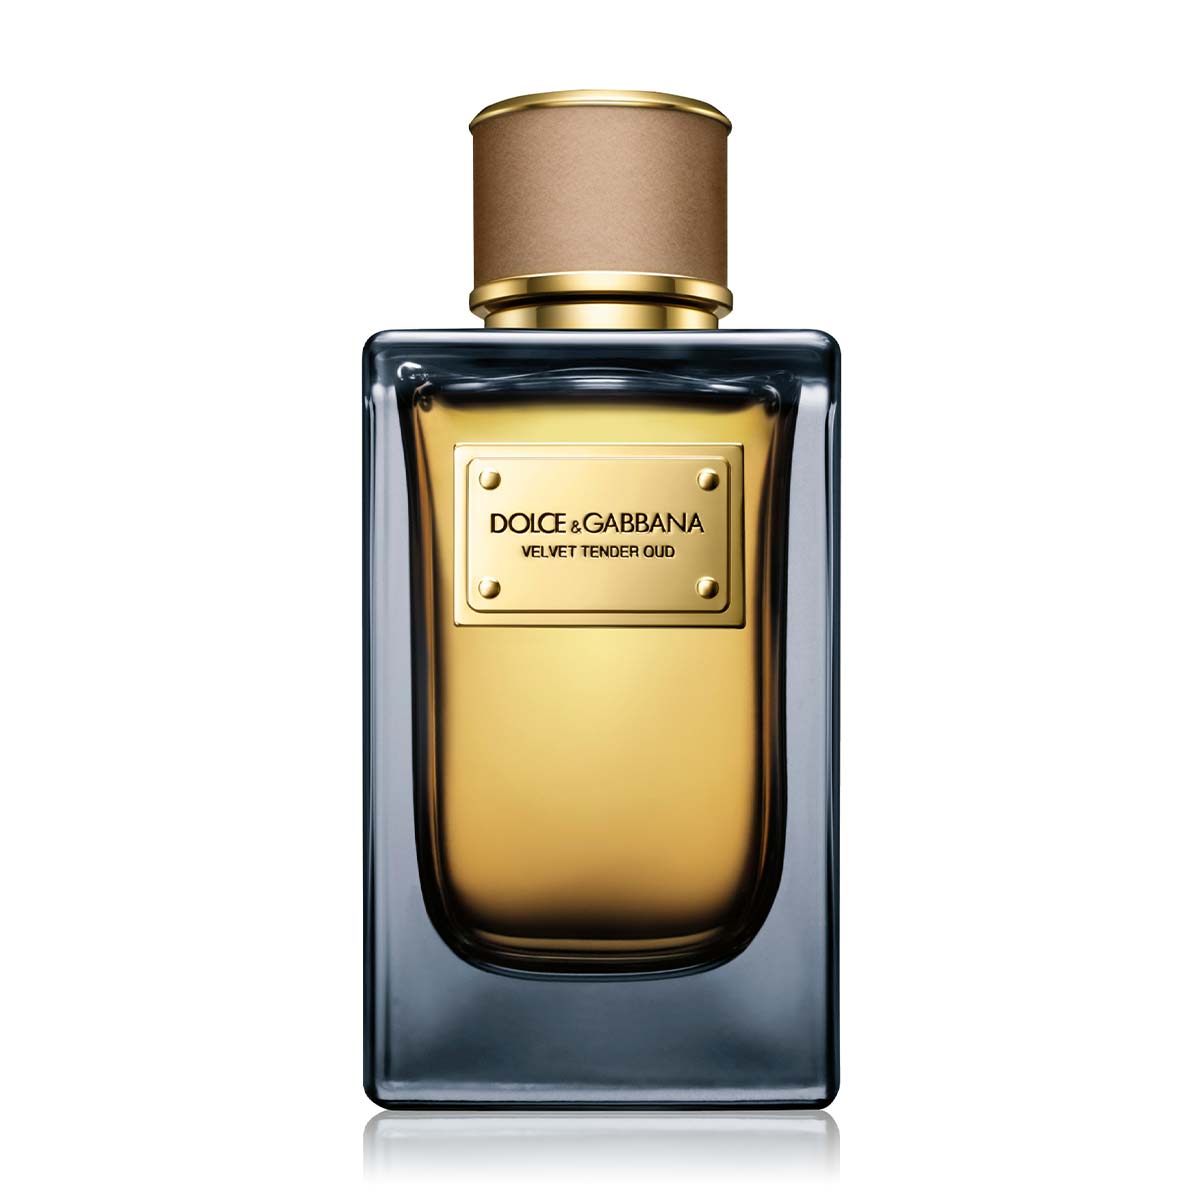 Dolce & Gabbana Velvet Tender Oud EDP | My Perfume Shop Australia